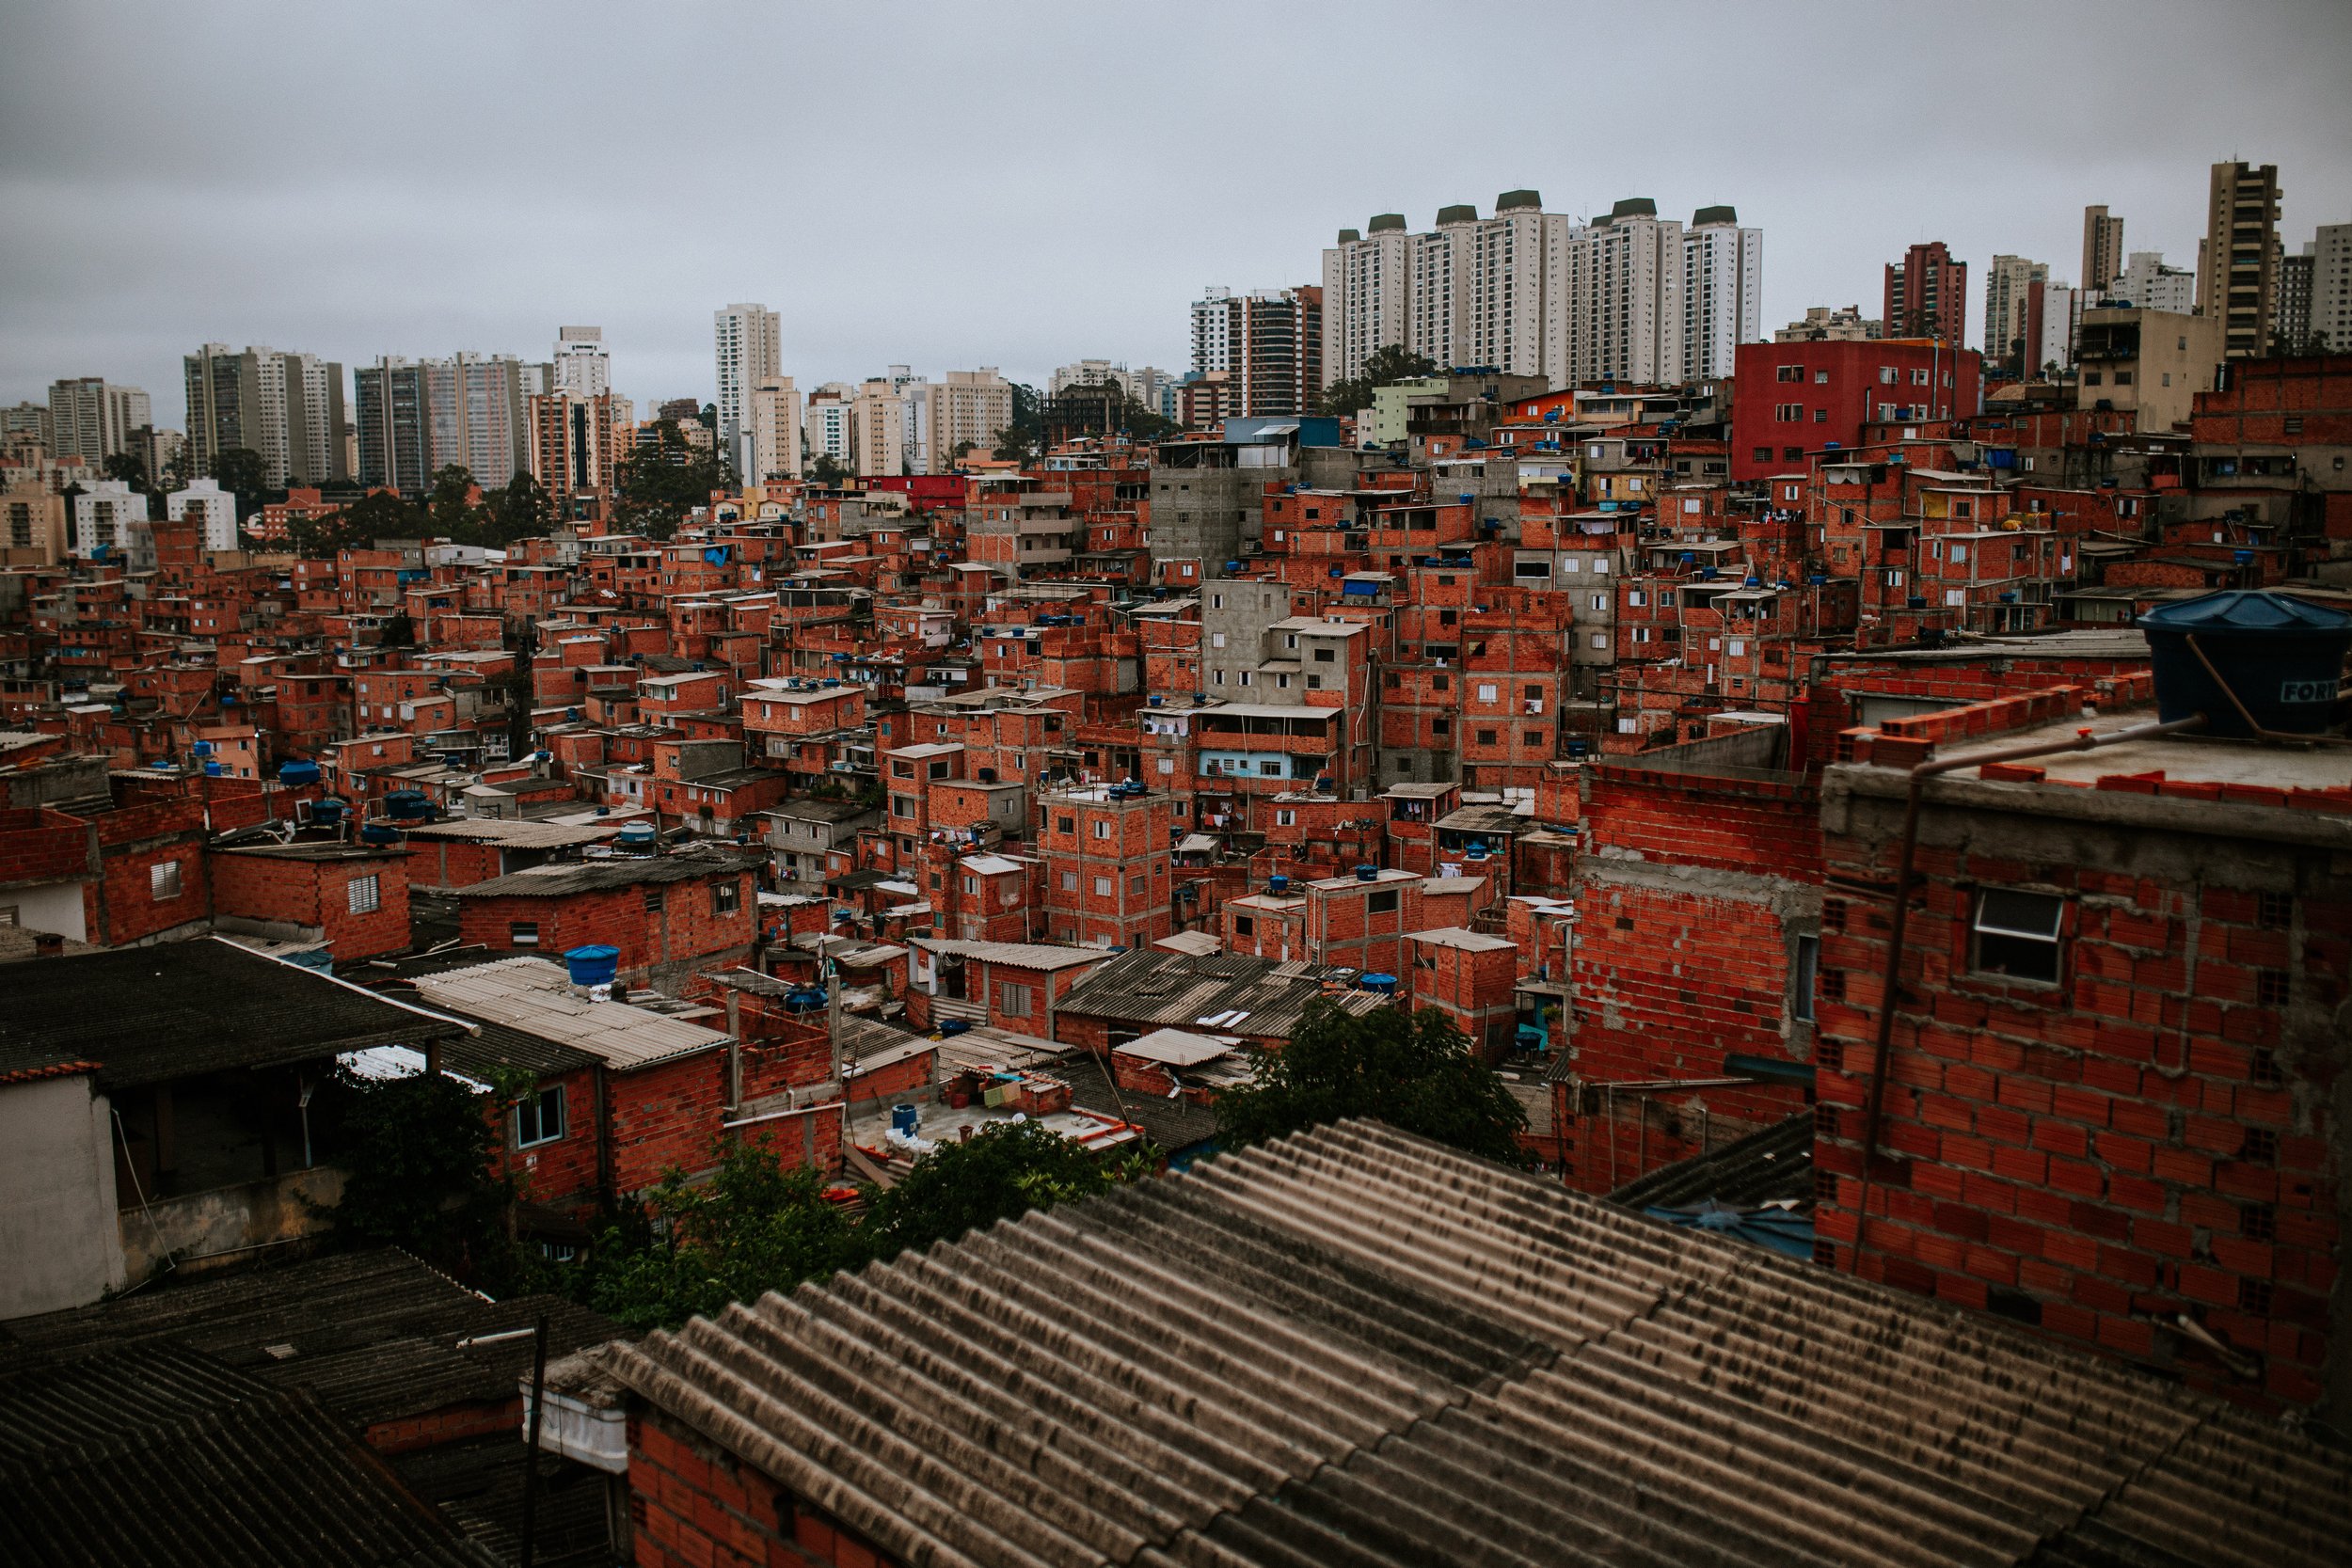 educaca-na-favela-de-paraisopolis-faculdade-na-favela-unicesumar-ricardo-franzen-17.jpg